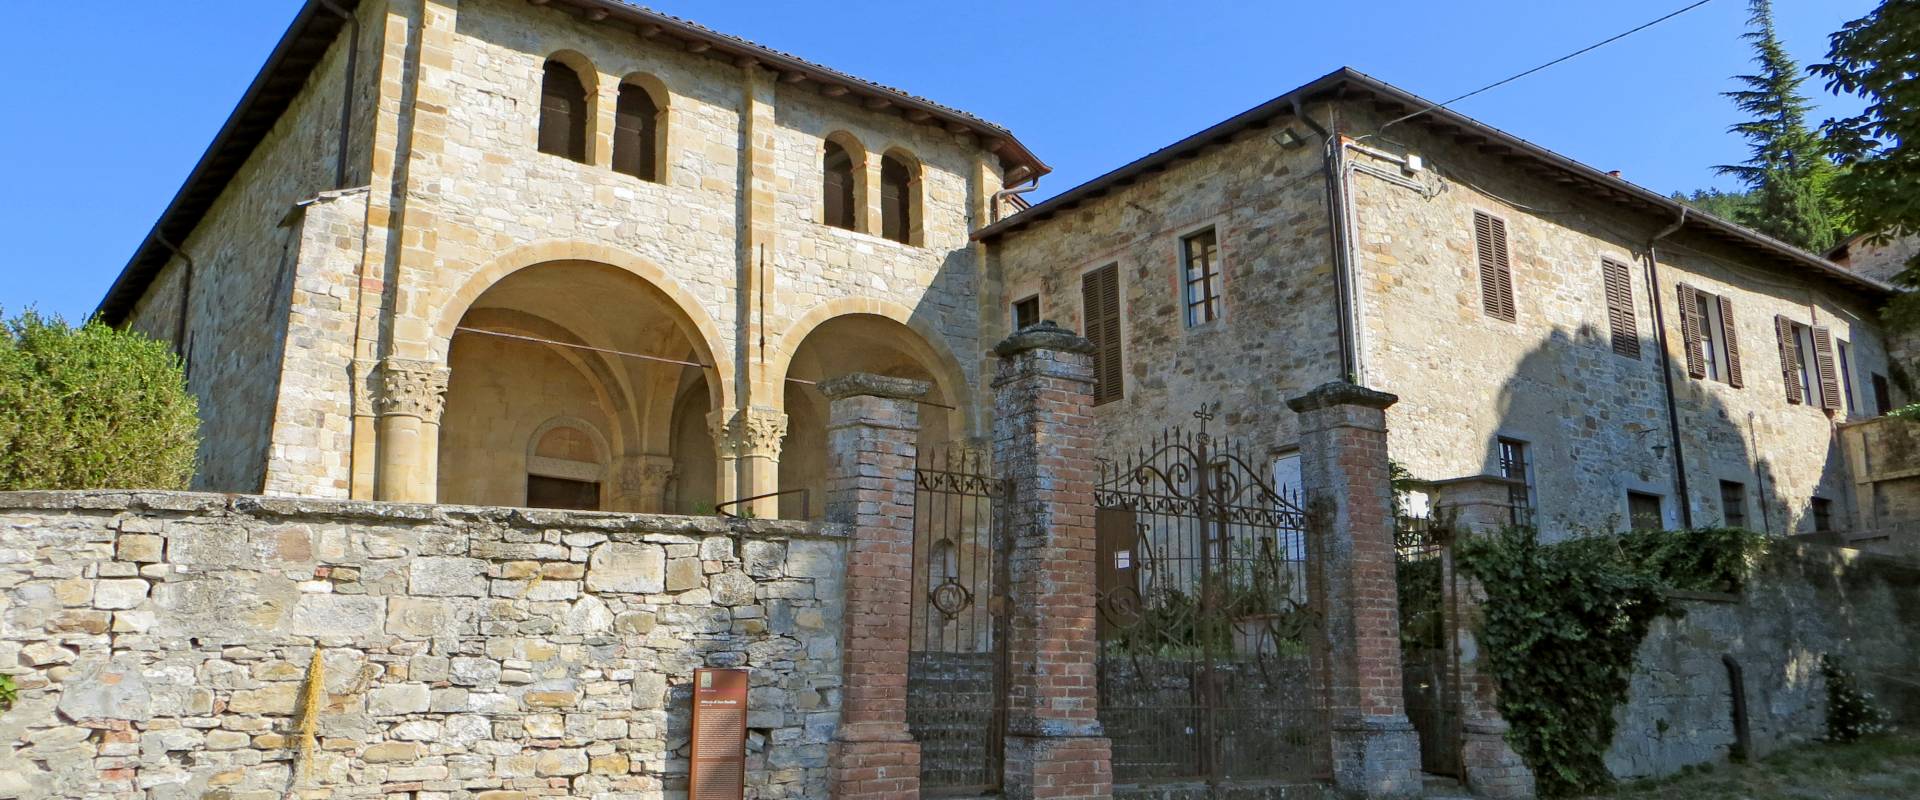 Abbazia di San Basilide (San Michele Cavana, Lesignano de' Bagni) - chiesa dei Santi Pietro e Paolo e canonica 2019-06-26 foto di Parma198